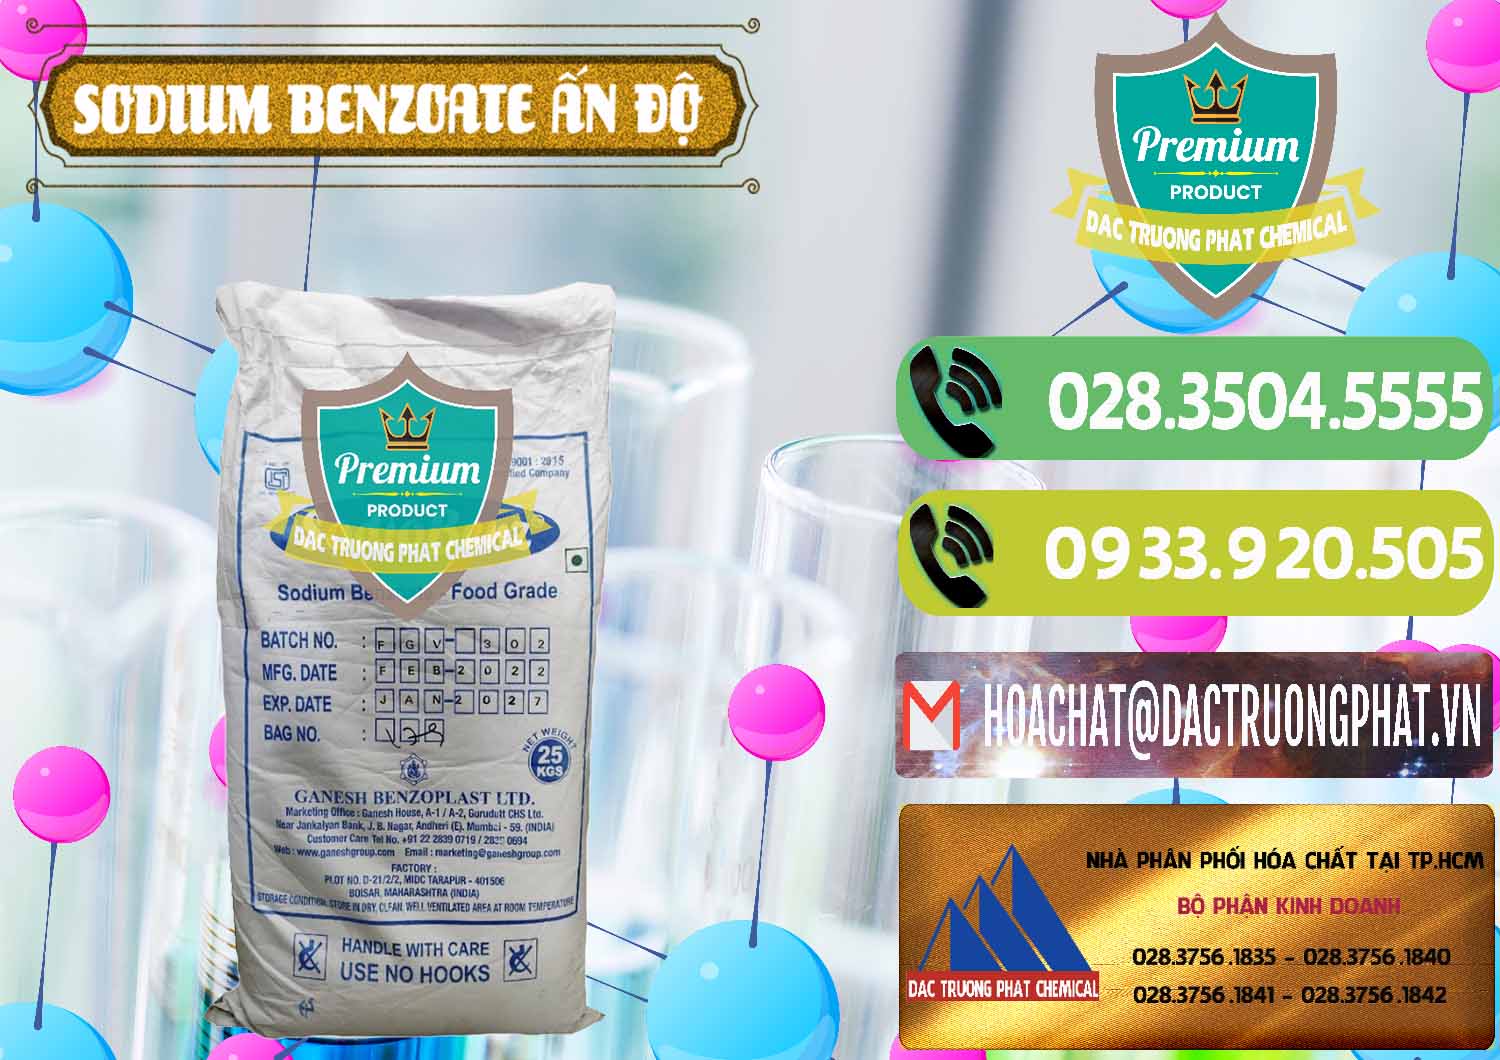 Nơi bán _ cung cấp Sodium Benzoate - Mốc Bột Ấn Độ India - 0361 - Nhà cung cấp và bán hóa chất tại TP.HCM - hoachatmientay.vn